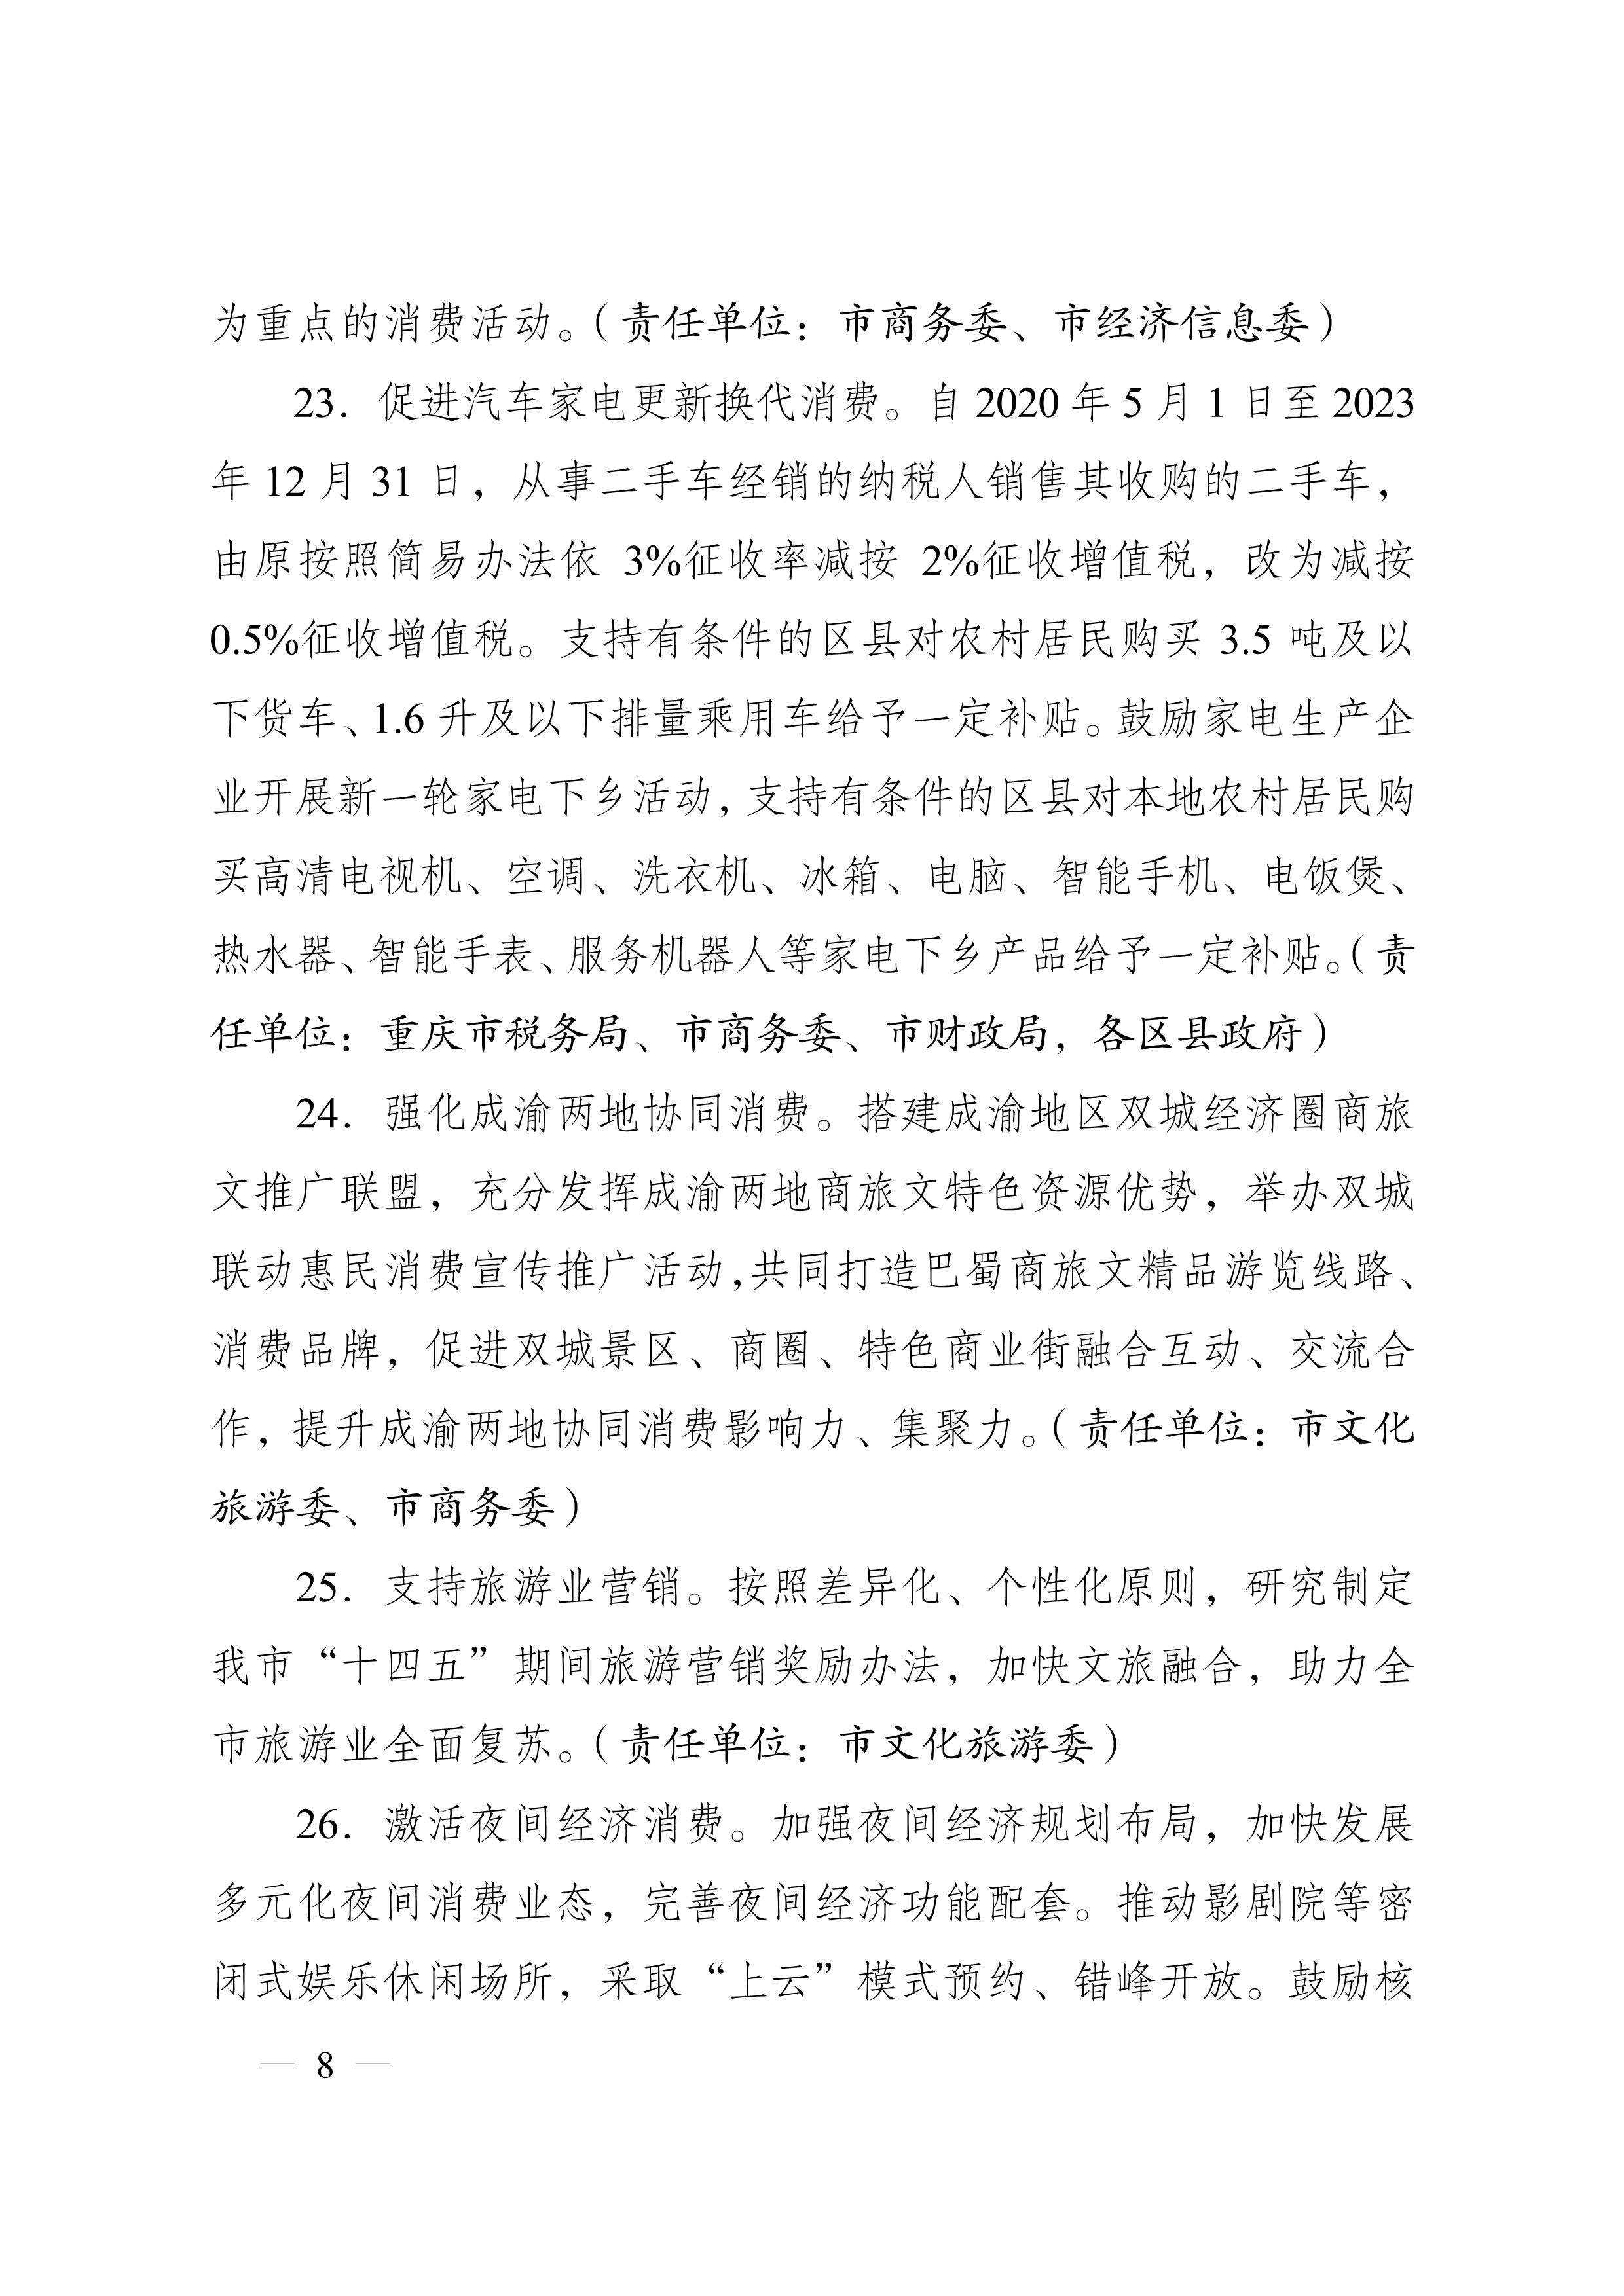 重庆市人民政府办公厅关于促进生产经营稳定发展若干措施的通知(图8)